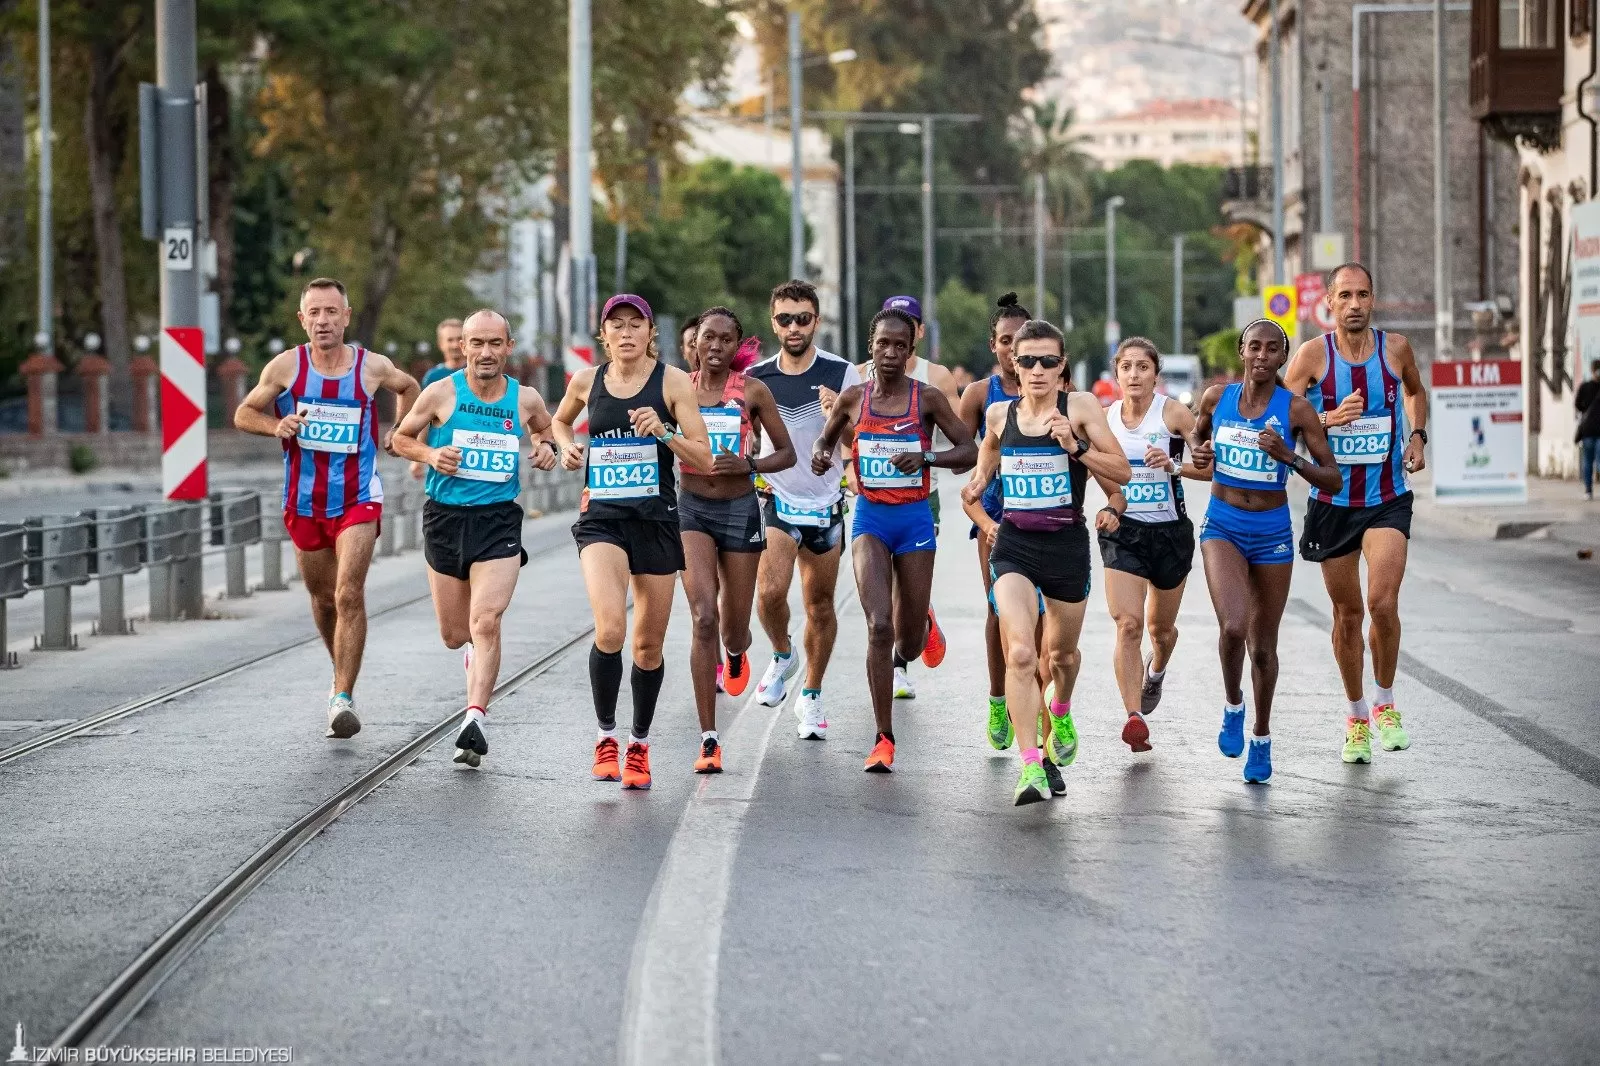 İzmir Büyükşehir Belediyesi, 21 Nisan Pazar günü düzenlenecek Maraton İzmir etkinliği kapsamında bazı ESHOT ve İZTAŞIT hatlarında geçici güzergâh değişiklikleri yapacak.